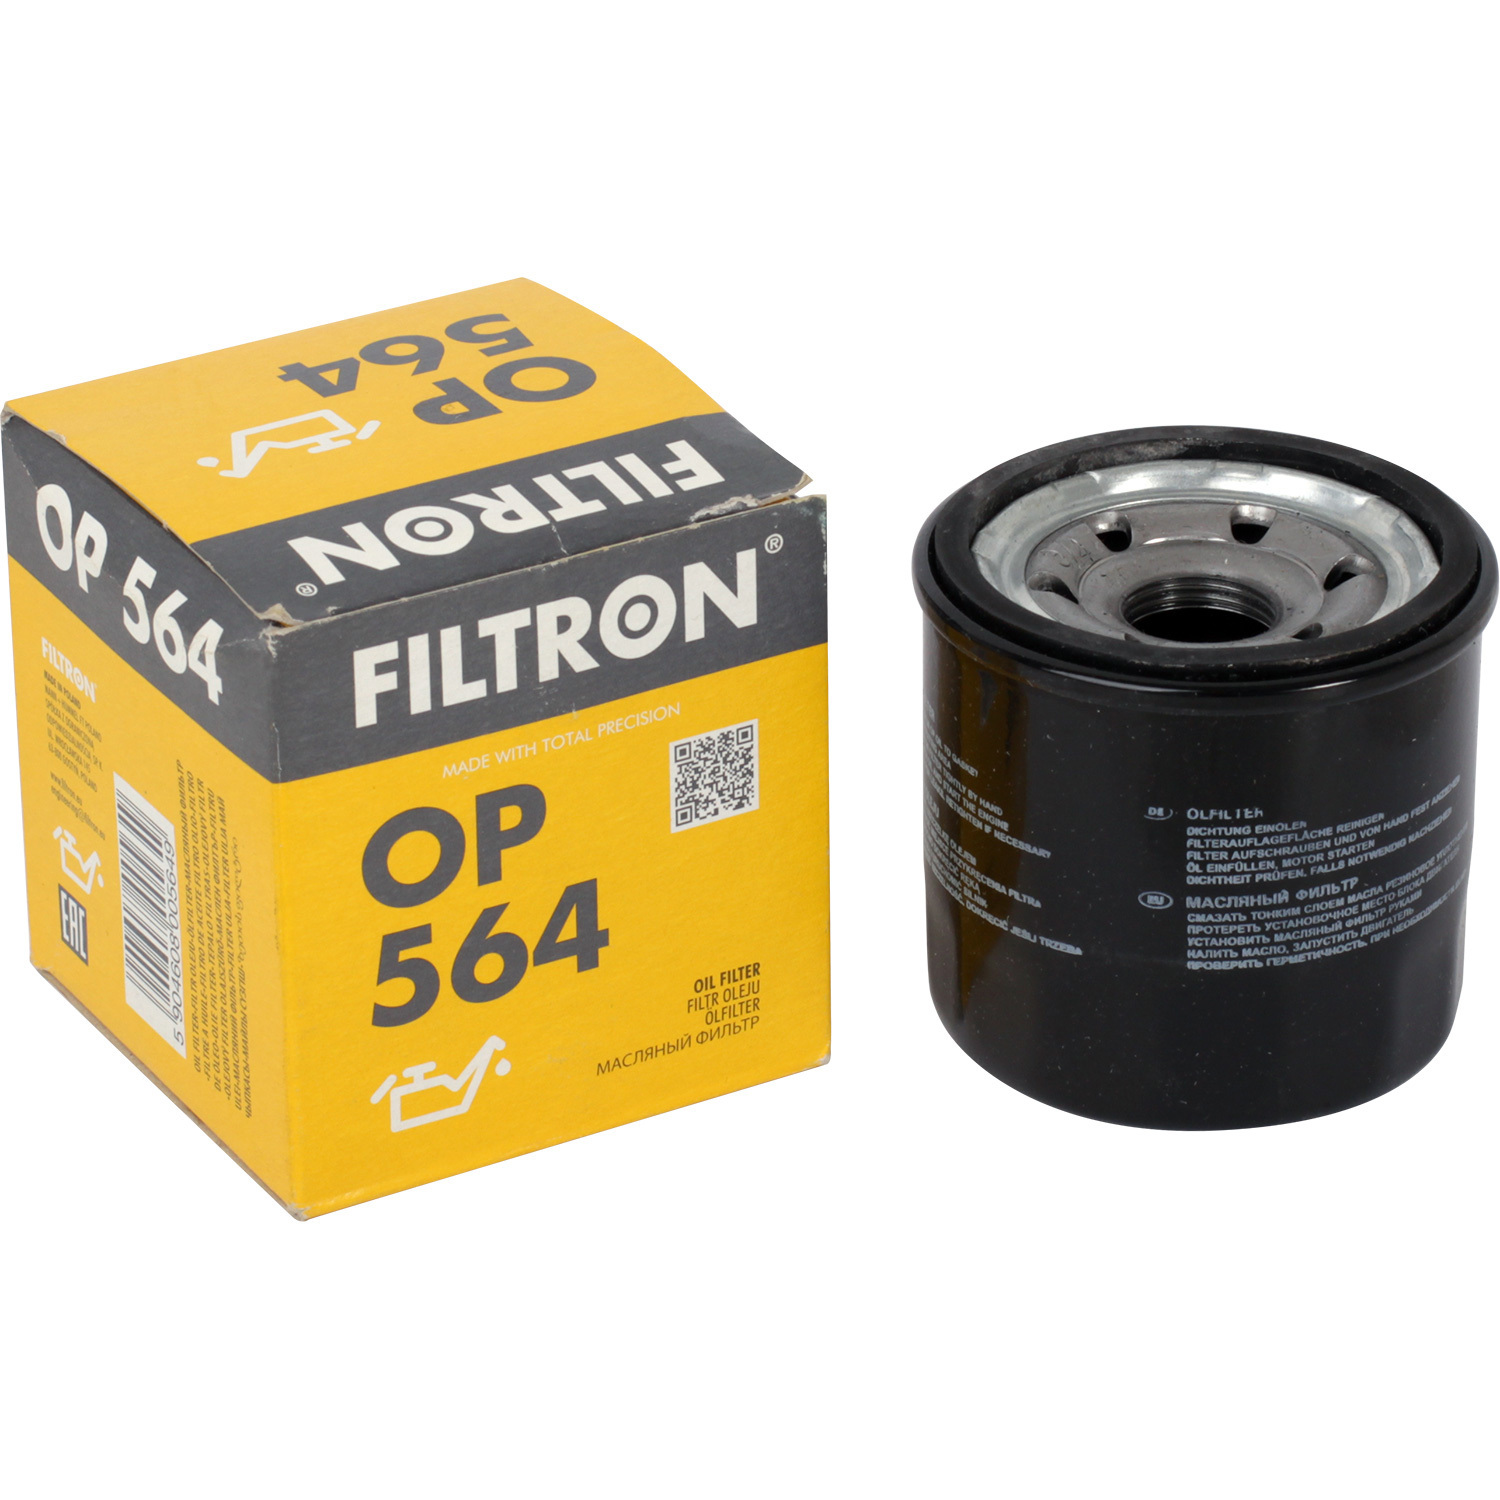 фильтры filtron фильтр масляный filtron op5662 Фильтры Filtron Фильтр масляный Filtron OP564